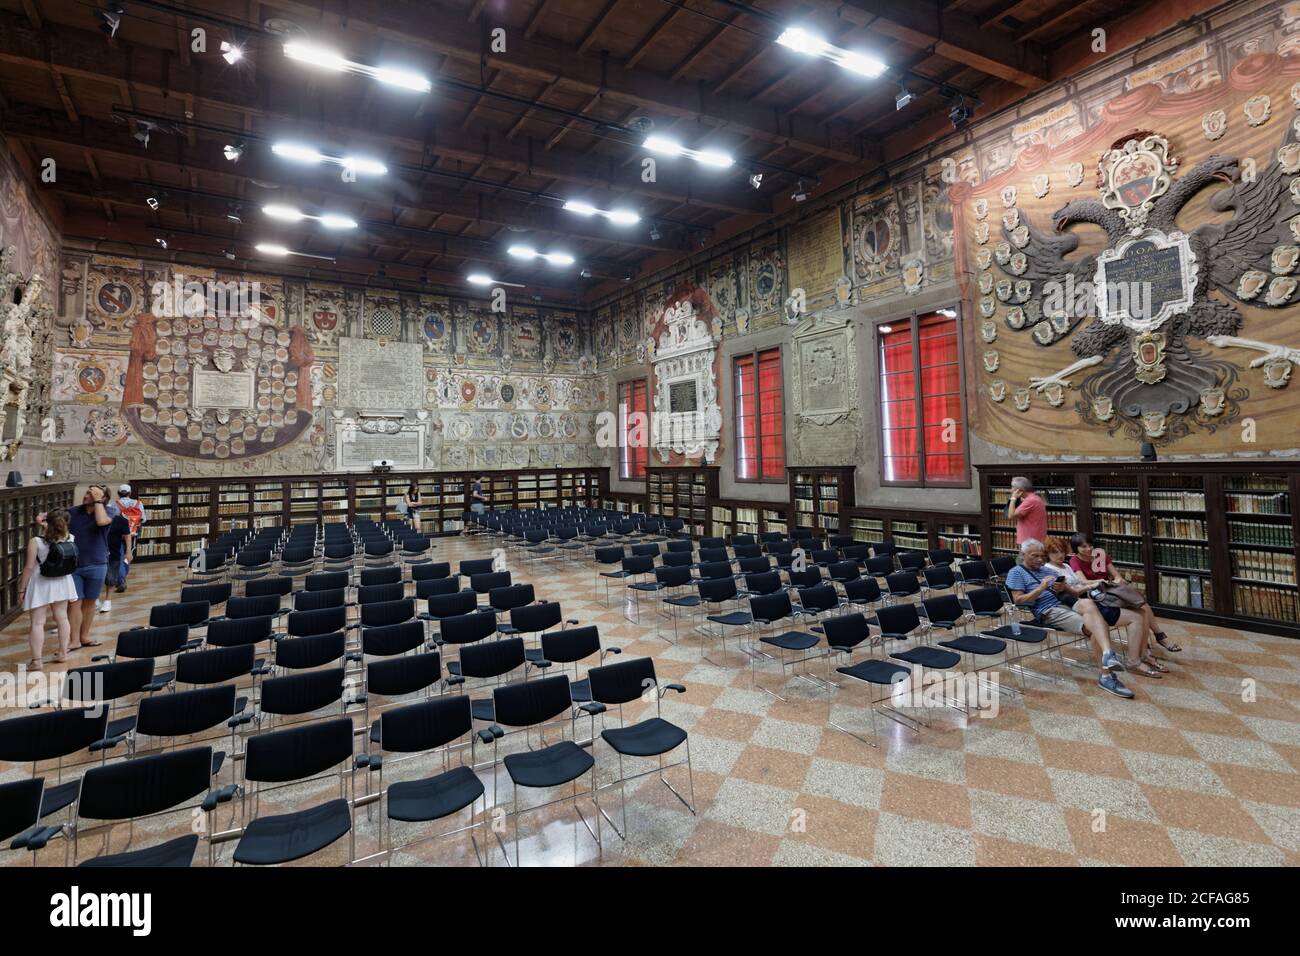 Sala dello Stabat Mater, la salle de conférence Stabat Mater dans l'Archiginnasio de Bologne, Italie Banque D'Images